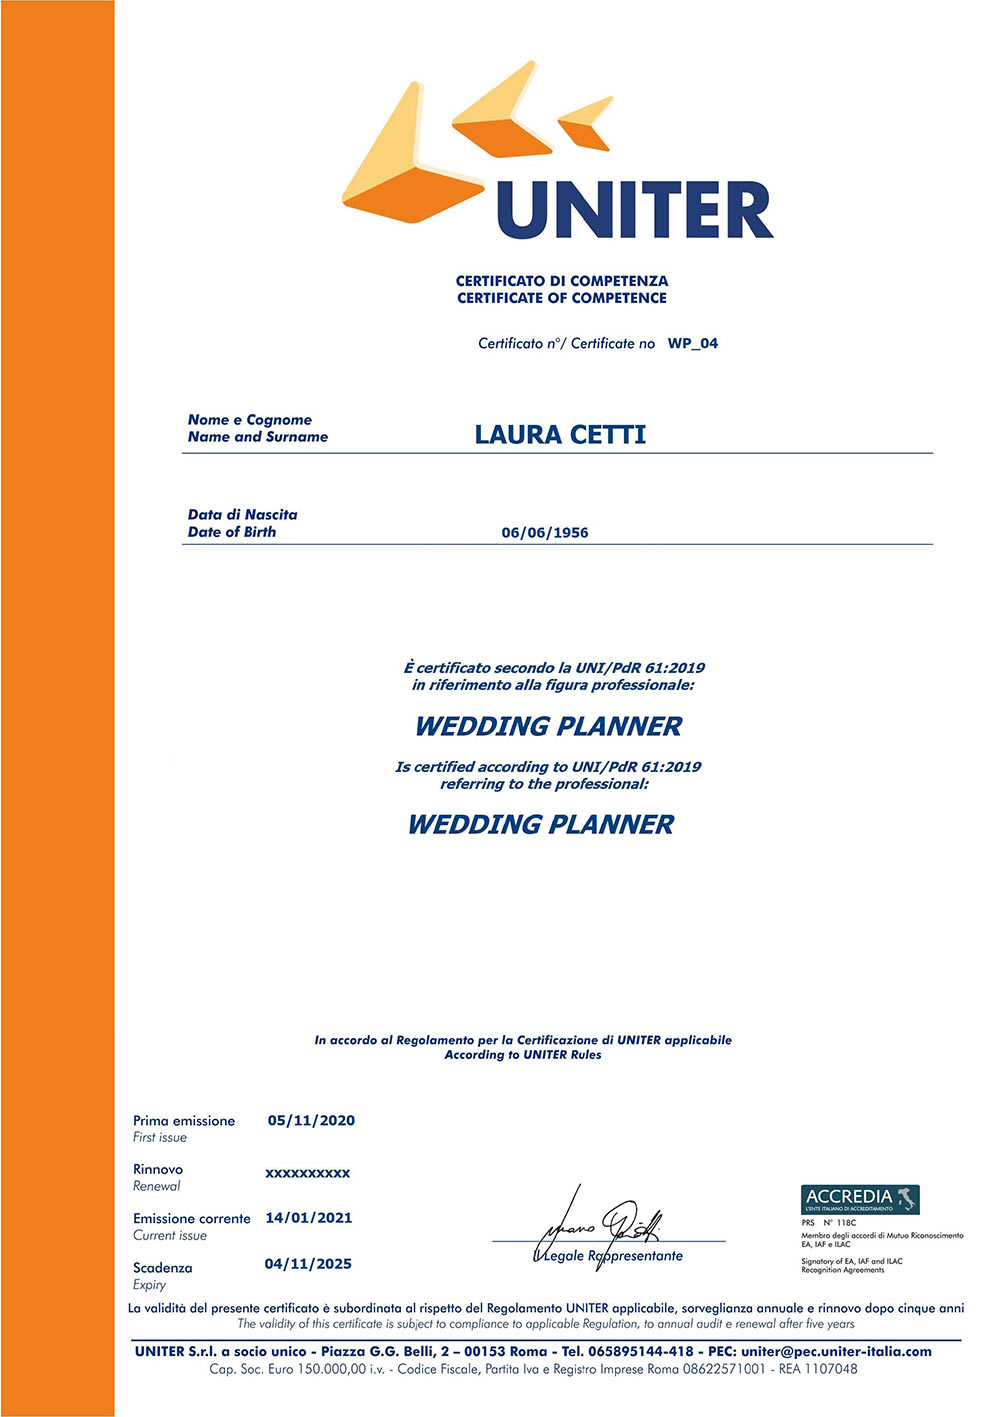 Certificazione rilasciata da UNITER come Wedding Planner abilitata